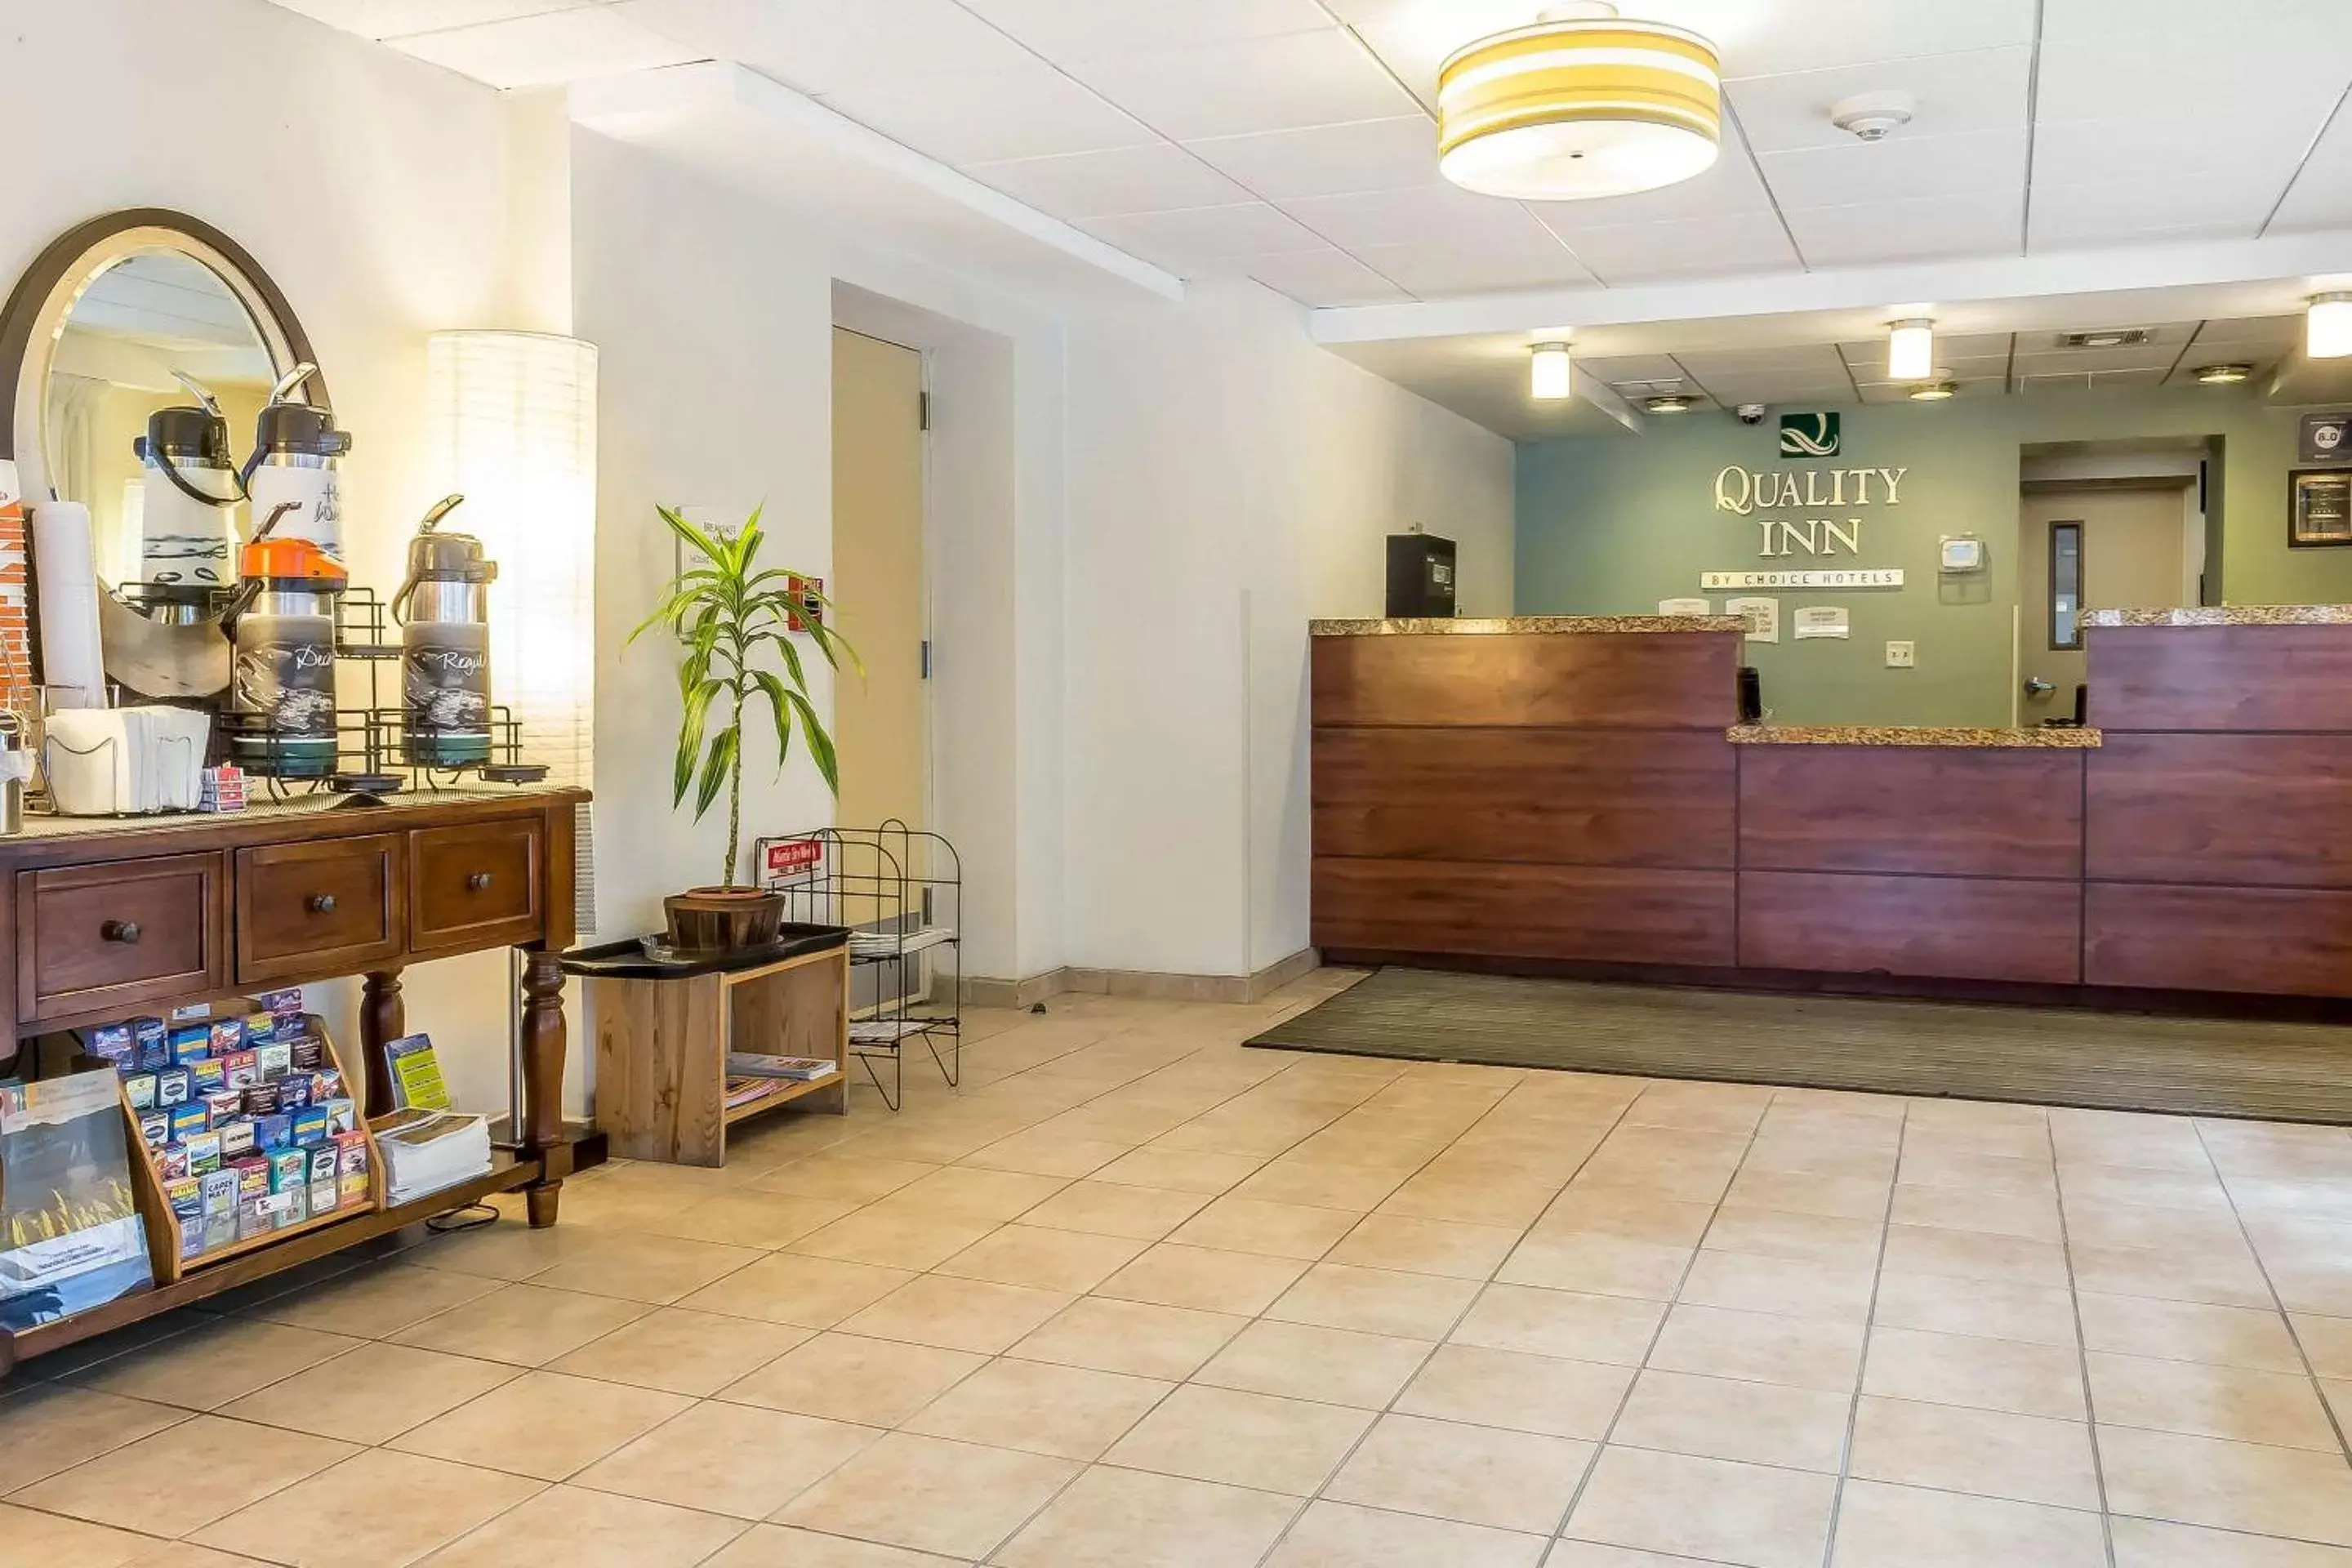 Lobby or reception, Lobby/Reception in Quality Inn Flamingo